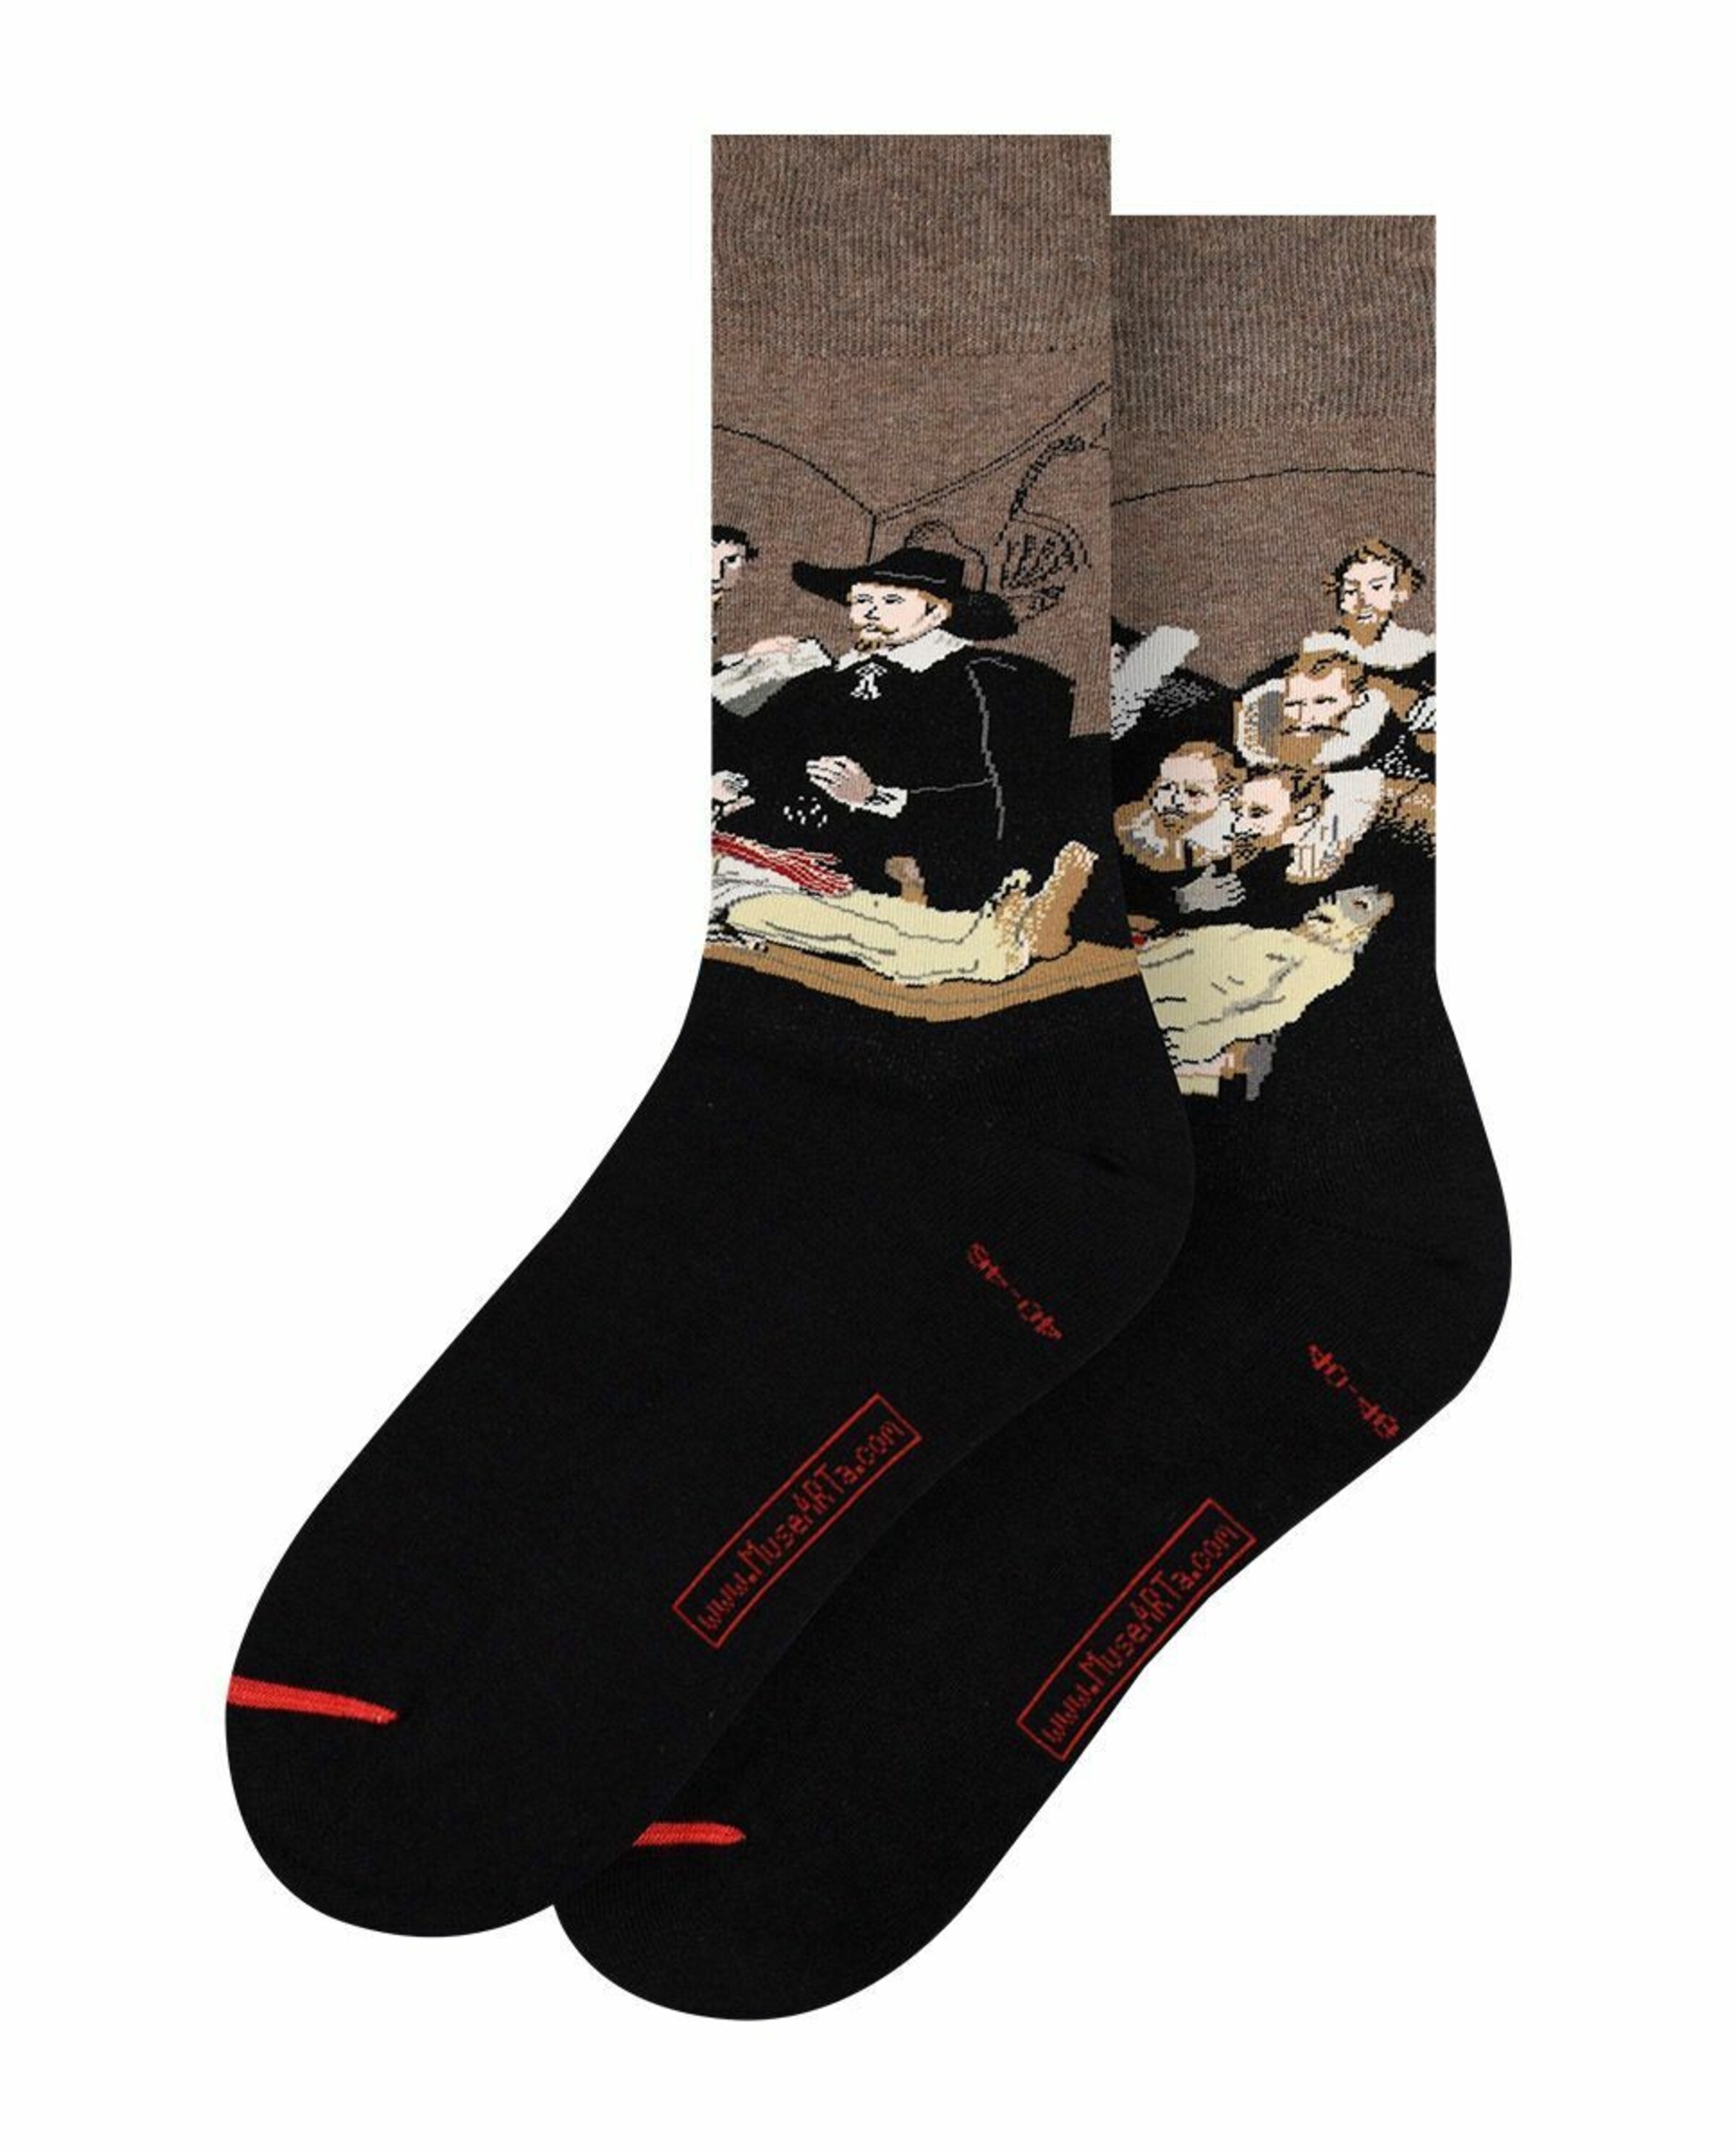 Frauen Wäsche MuseARTa Socken in Braun, Schwarz - YR33575